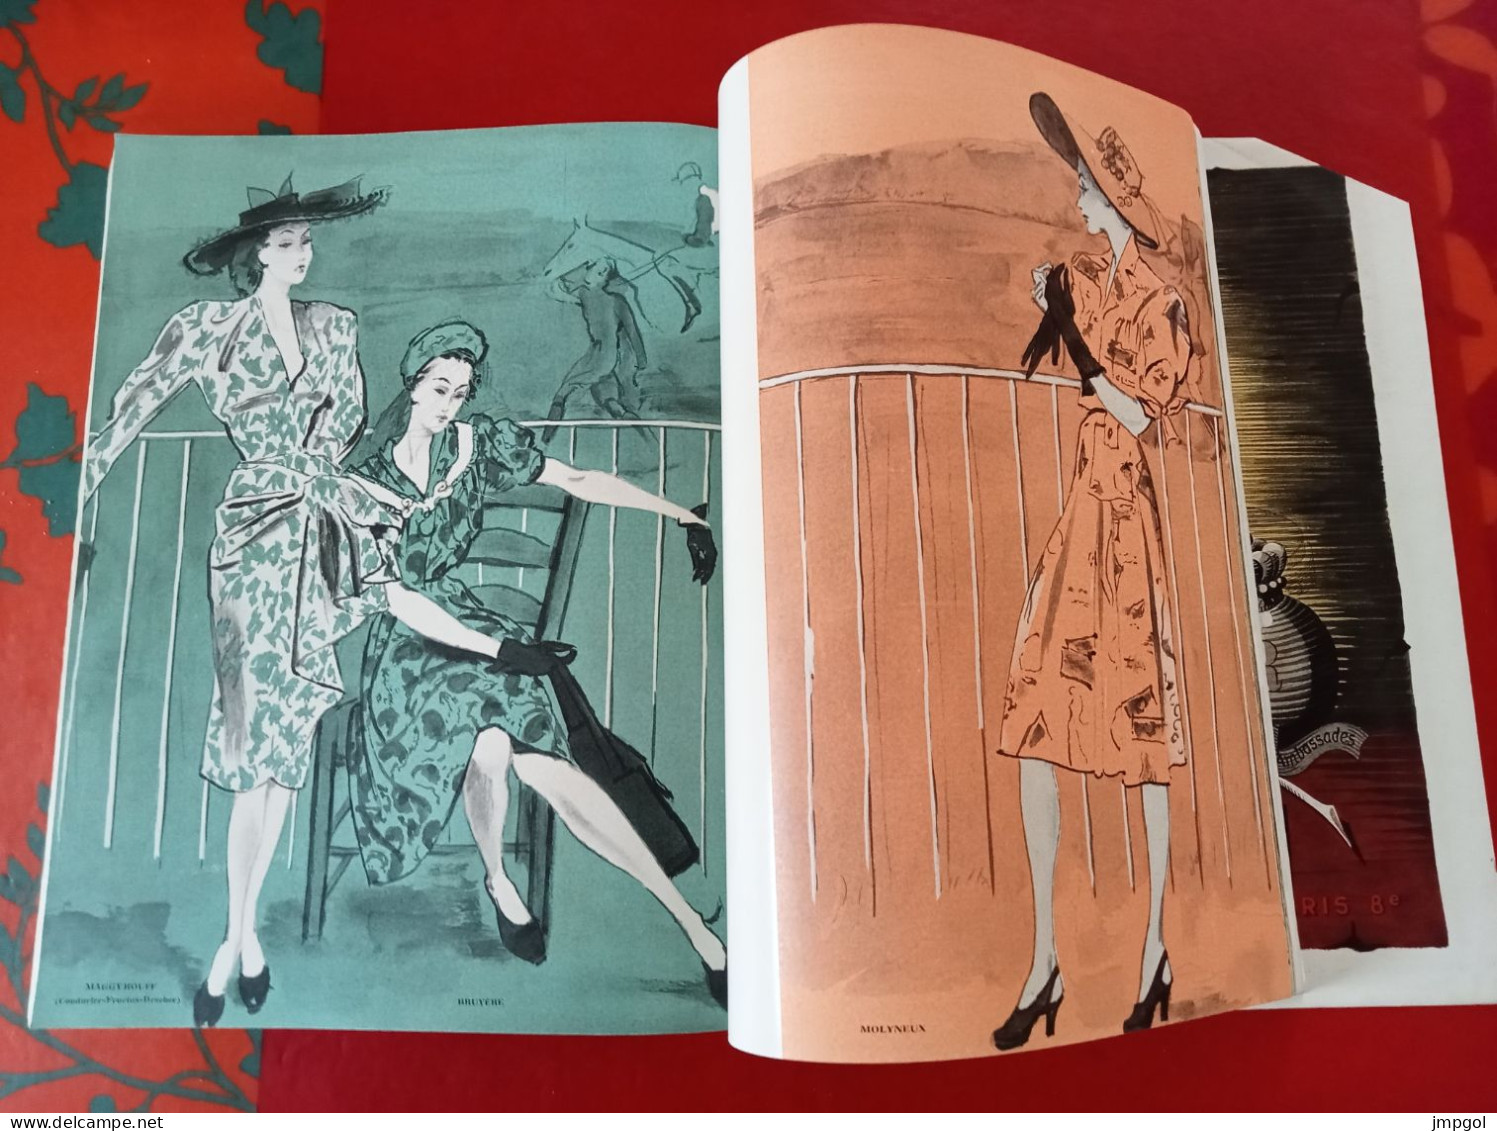 Officiel de la Mode et de la Couture Paris Avril 1946 Collections Printemps Dior Lanvin Patou Fath Balenciaga Rochas